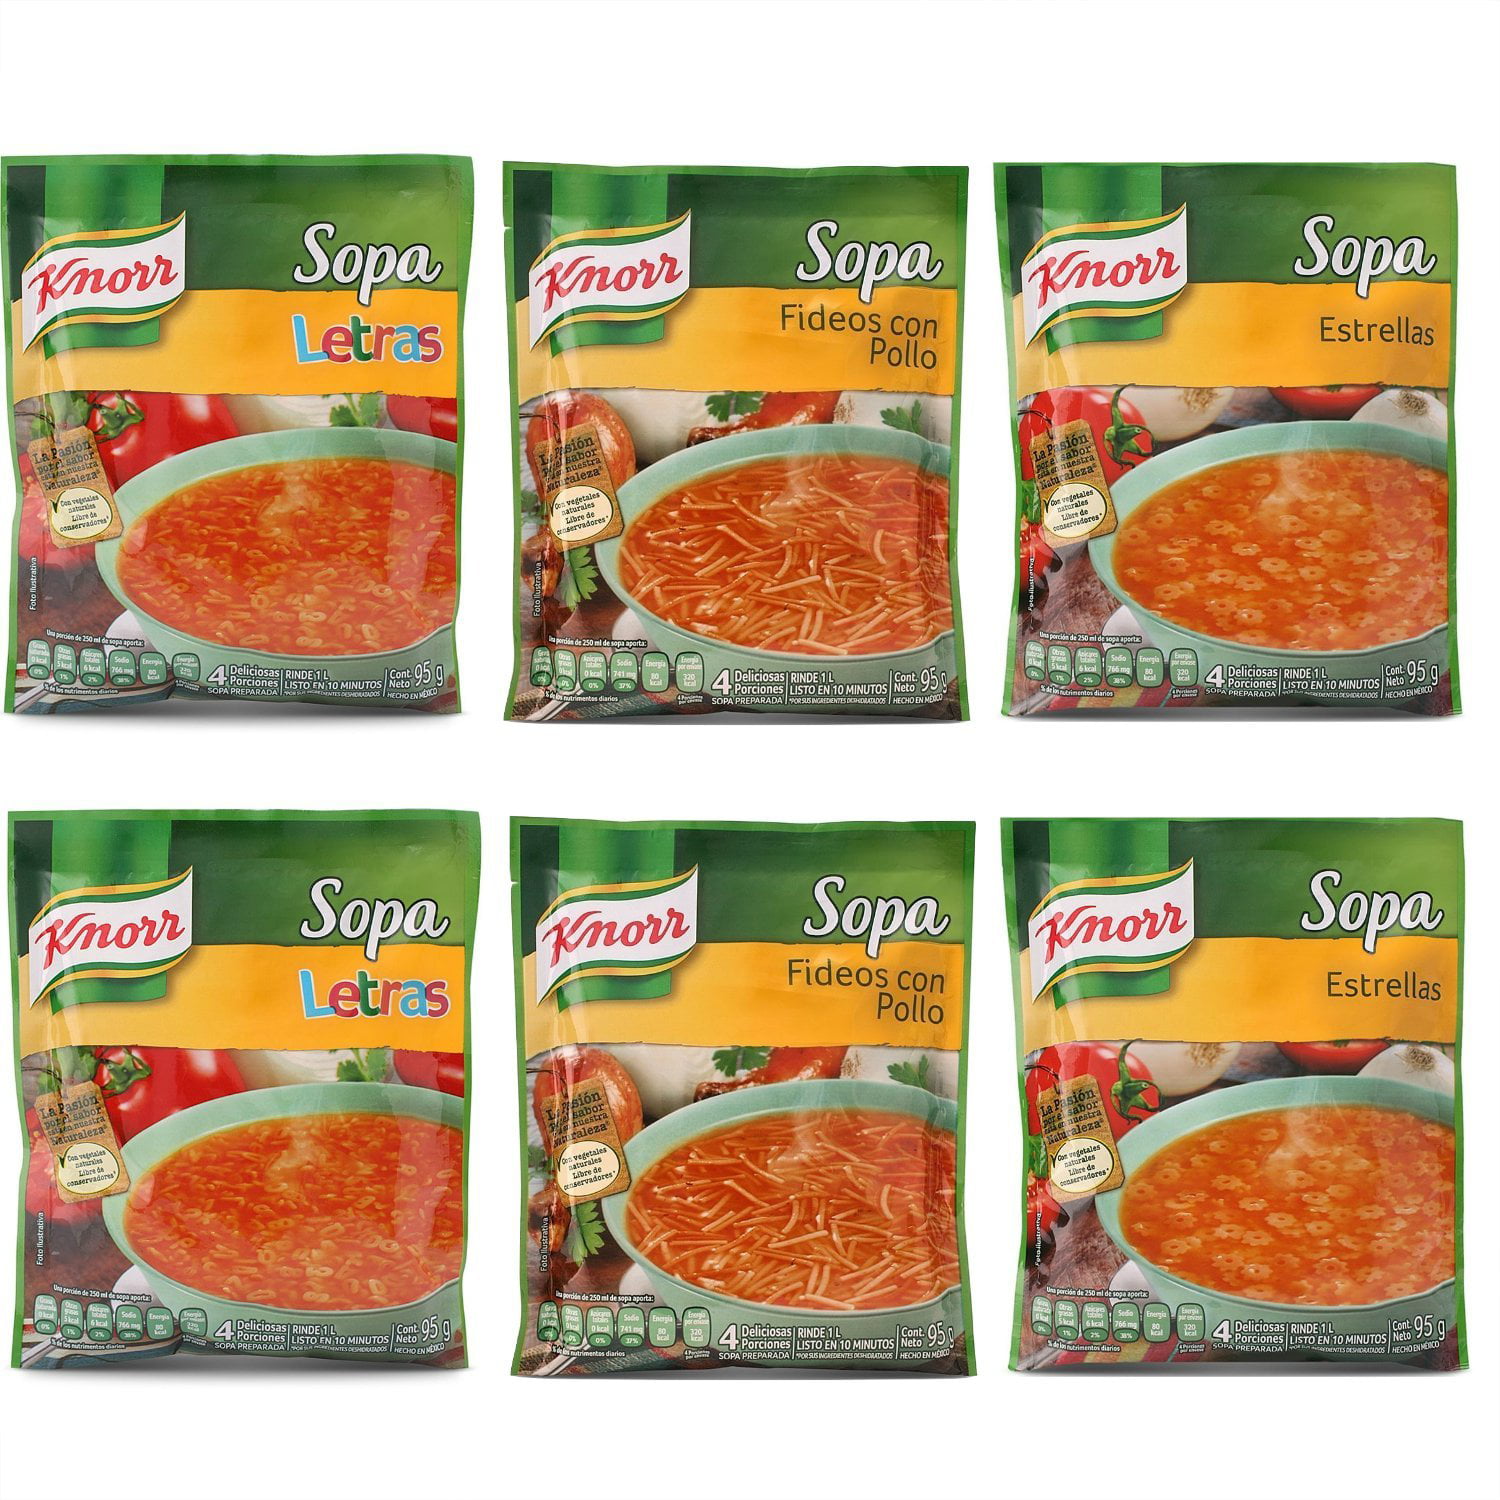 Sopa Knorr Estrellas Letras And Fideos Con Pollo (Pack Of 6 Soups – 2 Each)   Oz Each Bag 